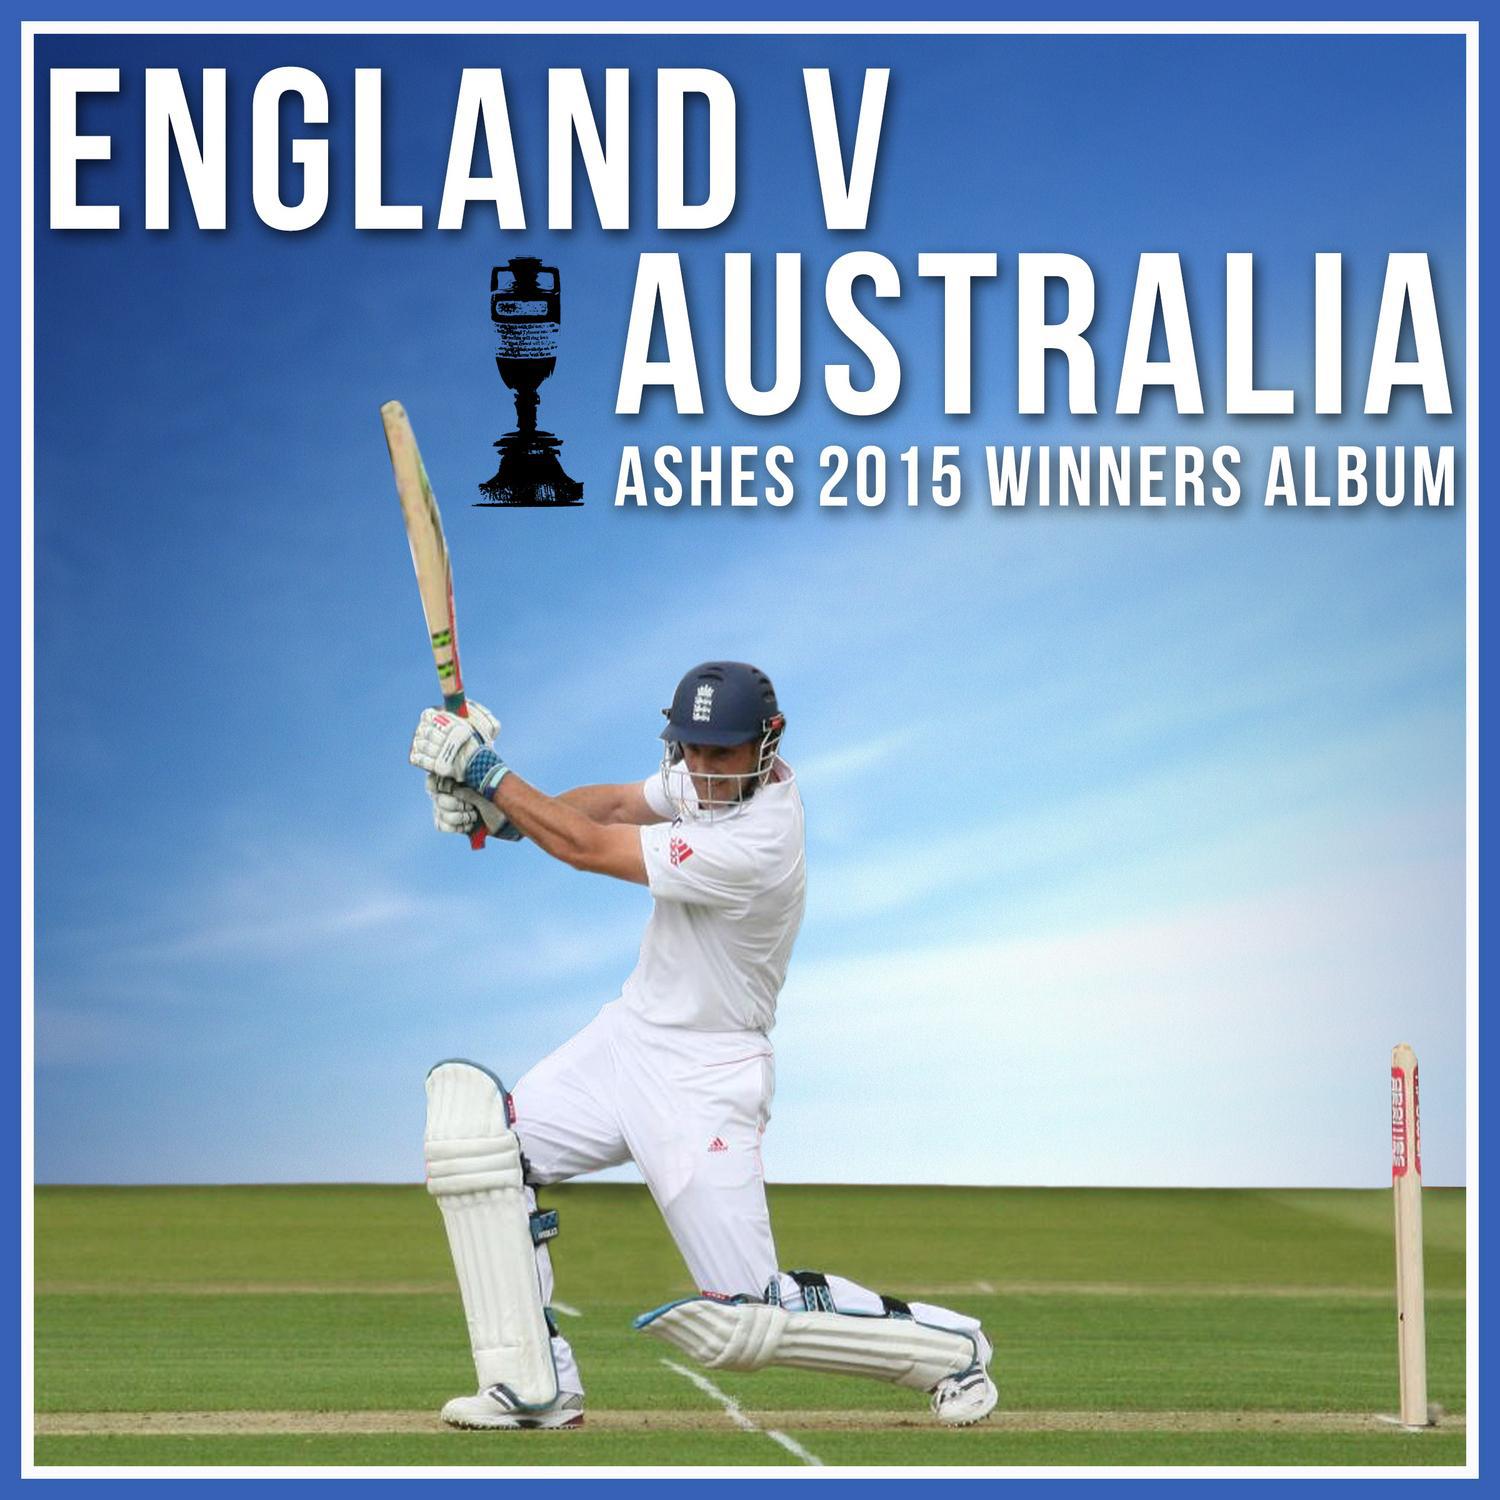 England V Australia - Ashes 2015 Winners Album